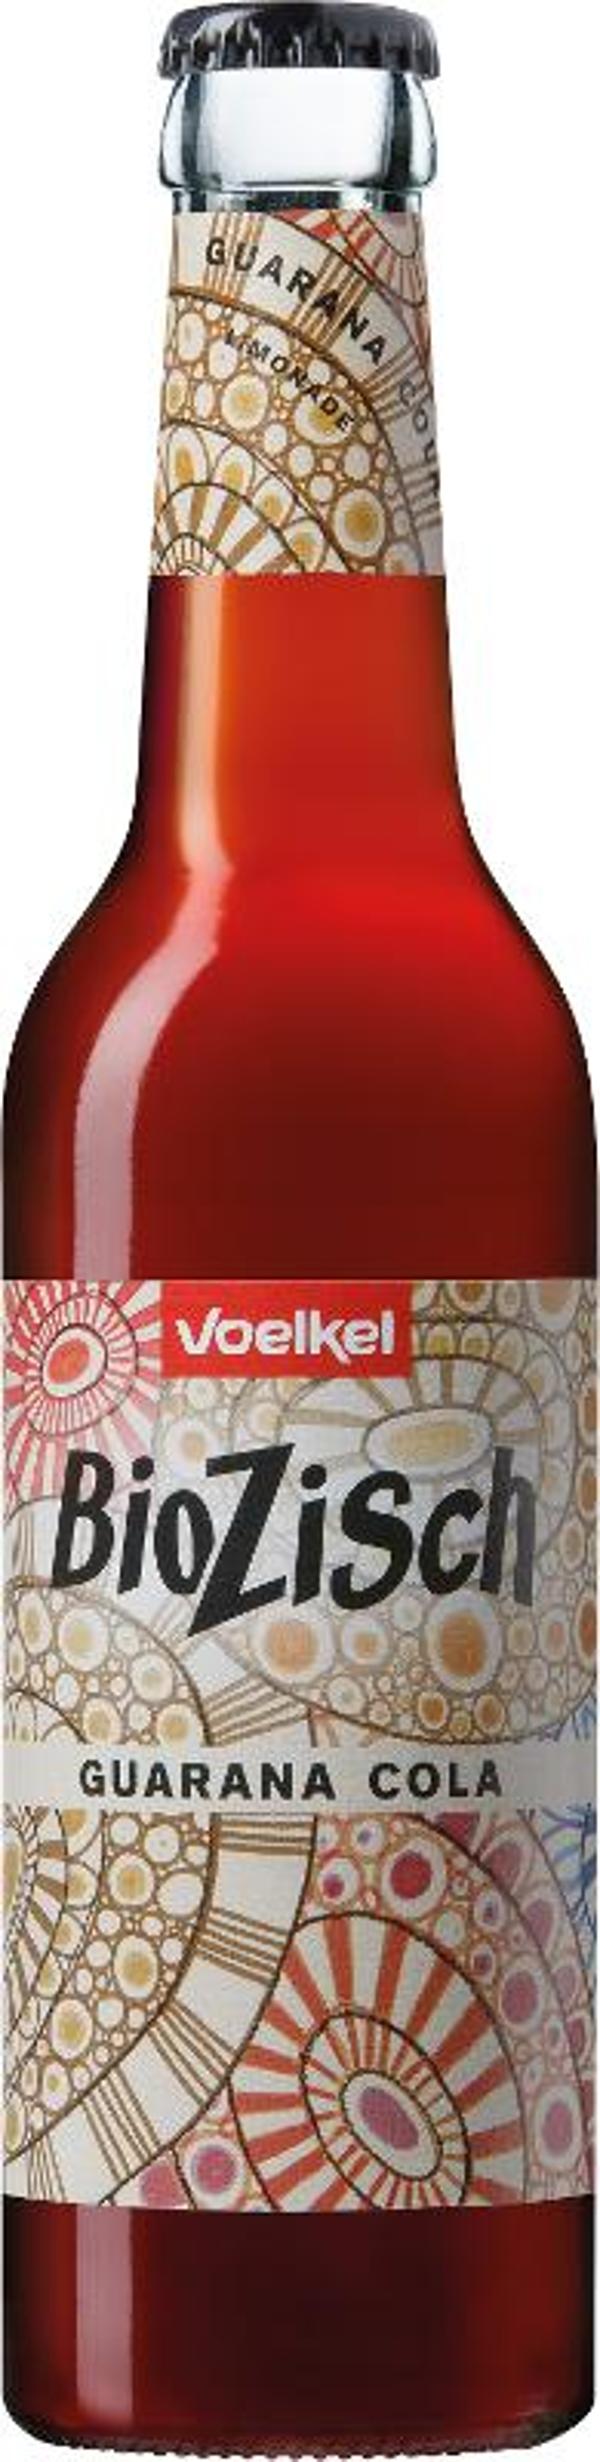 Produktfoto zu VPE Bio Zisch Guarana Cola 12x0,33 l Voelkel